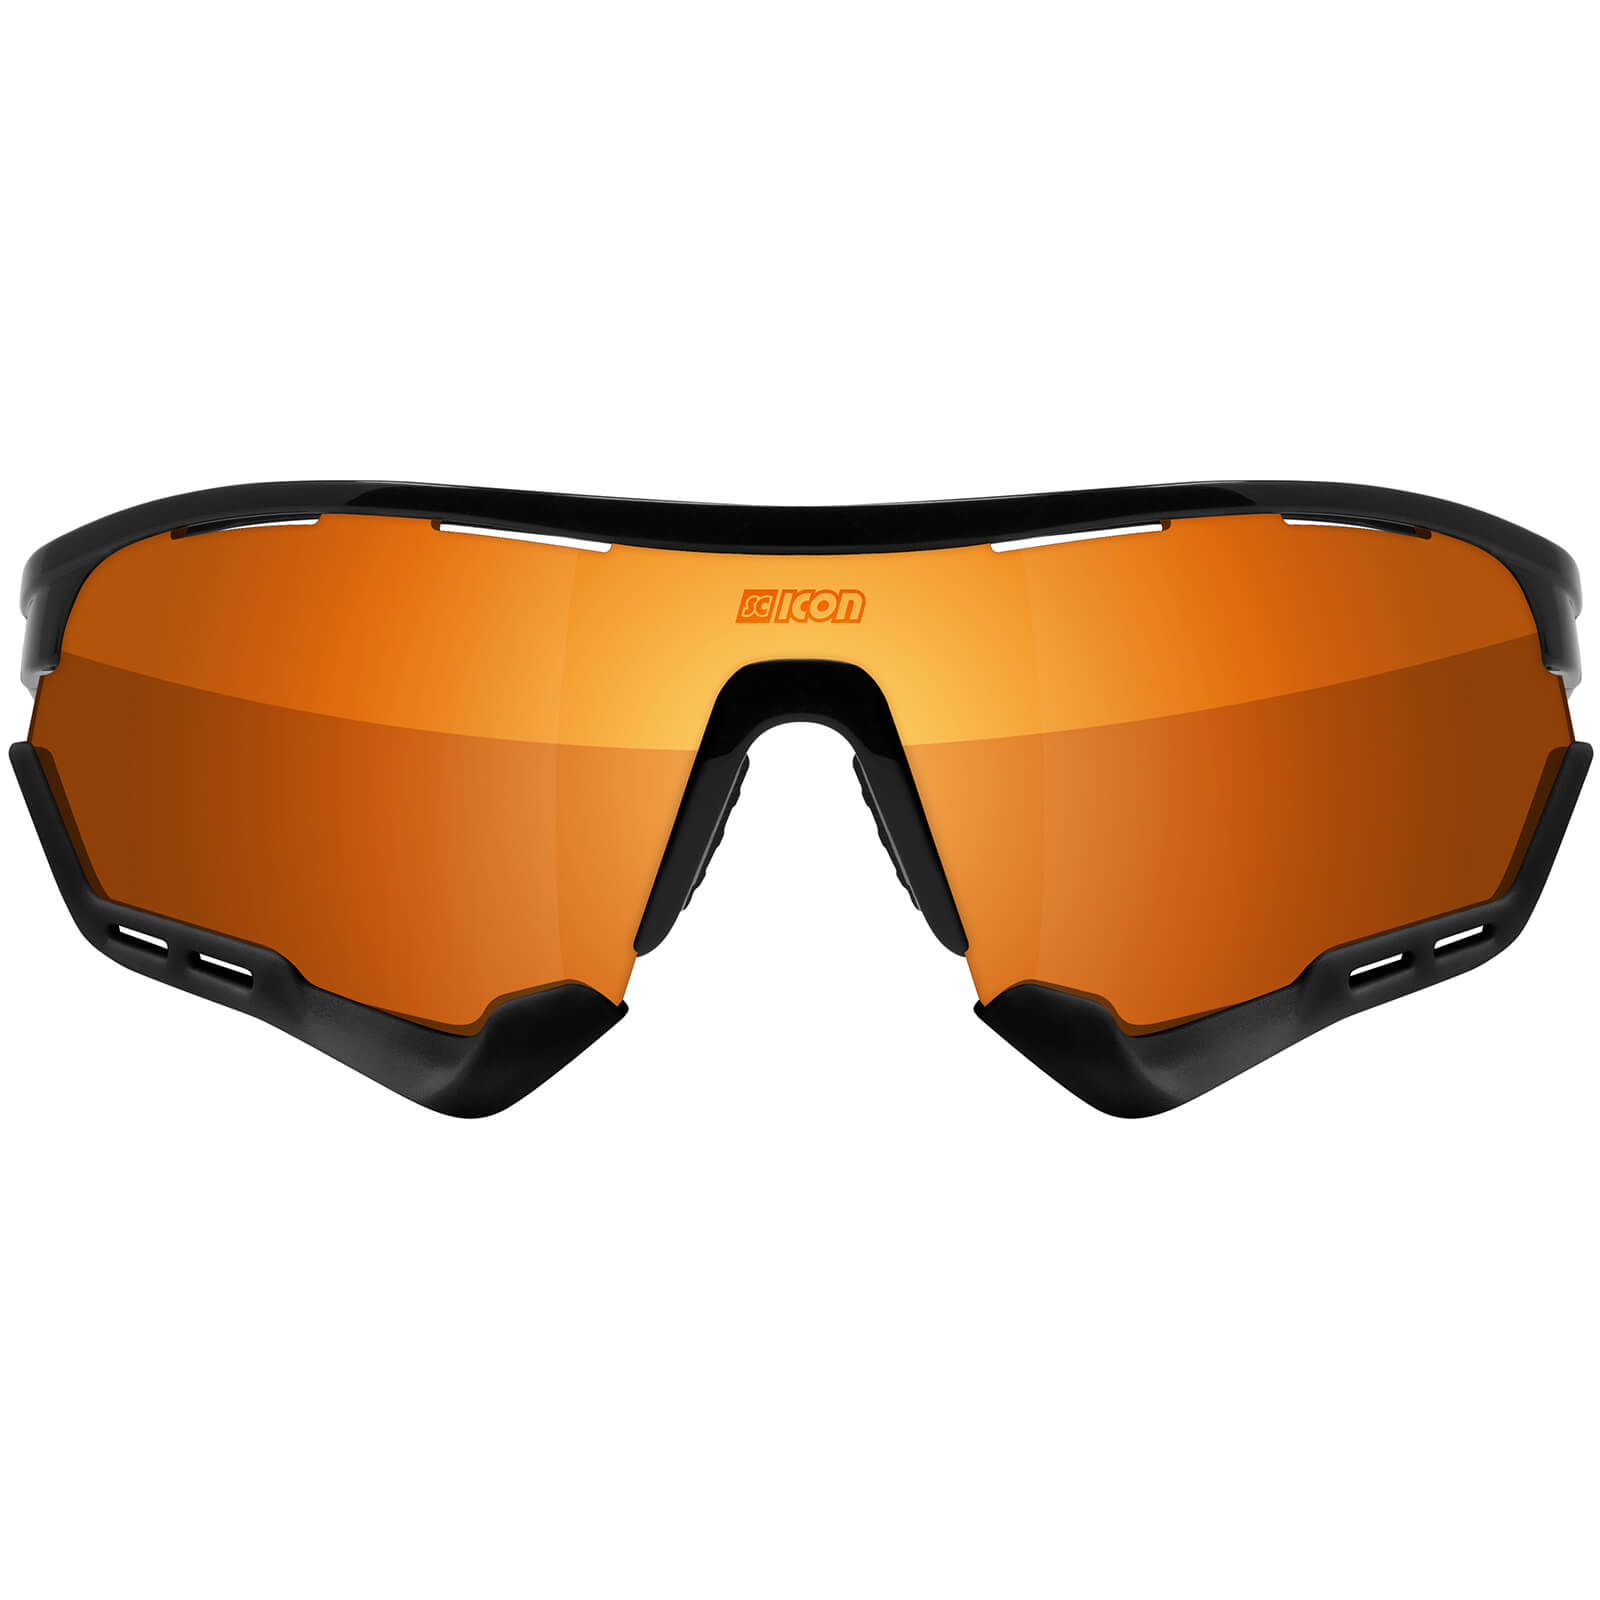 Scicon Aerotech Xl Road Sunglasses - Black Gloss - Multilaser Bronze